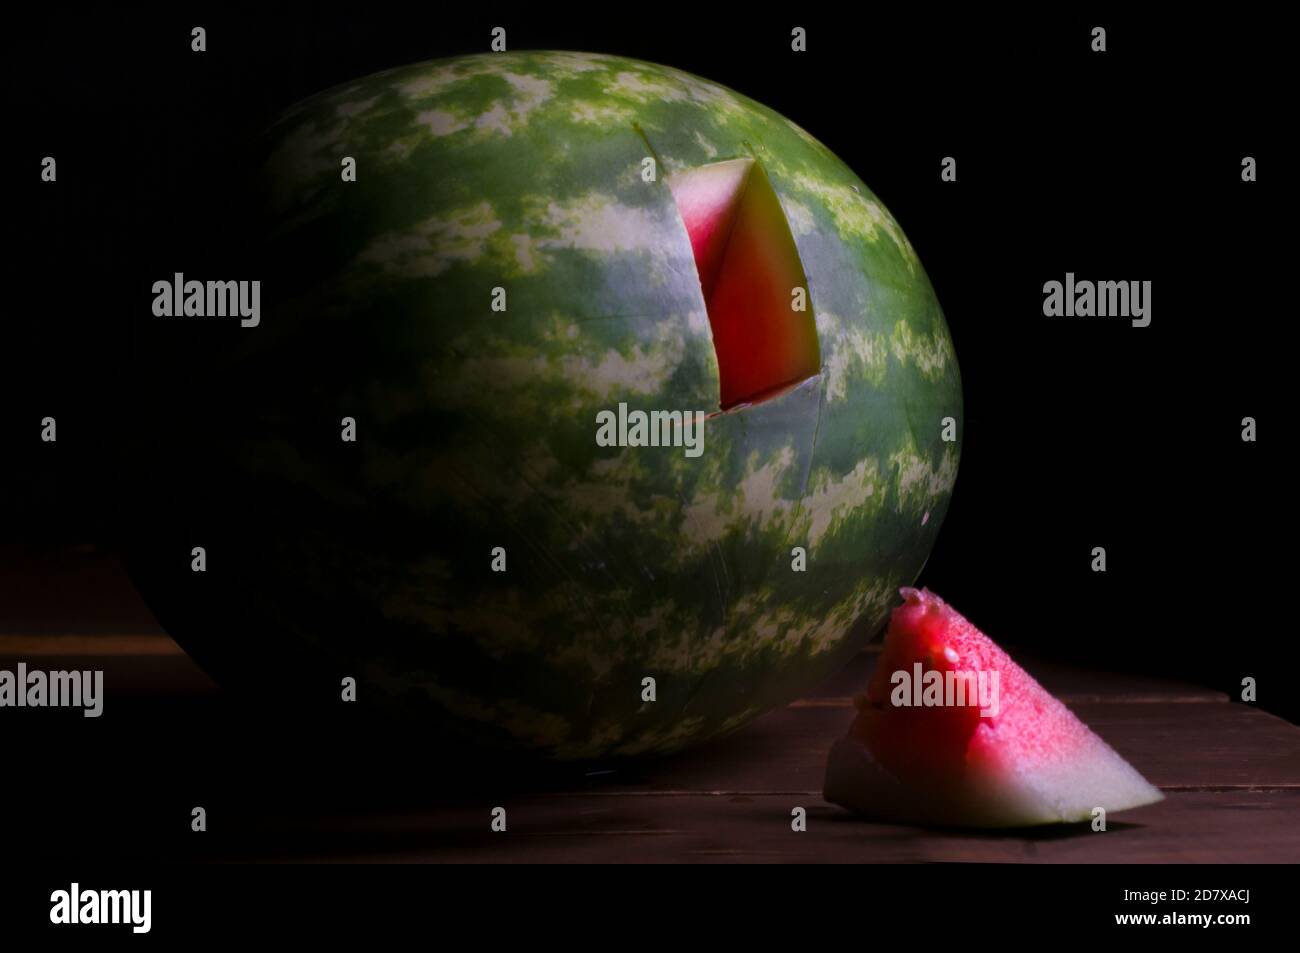 Spiking eine Wassermelone, Tests mit einer kleinen Probe von Wassermelone. Chiaroscuro Barockfotografie, Renaissance-Stil, Probe von Wassermelone. Stillleben Stockfoto